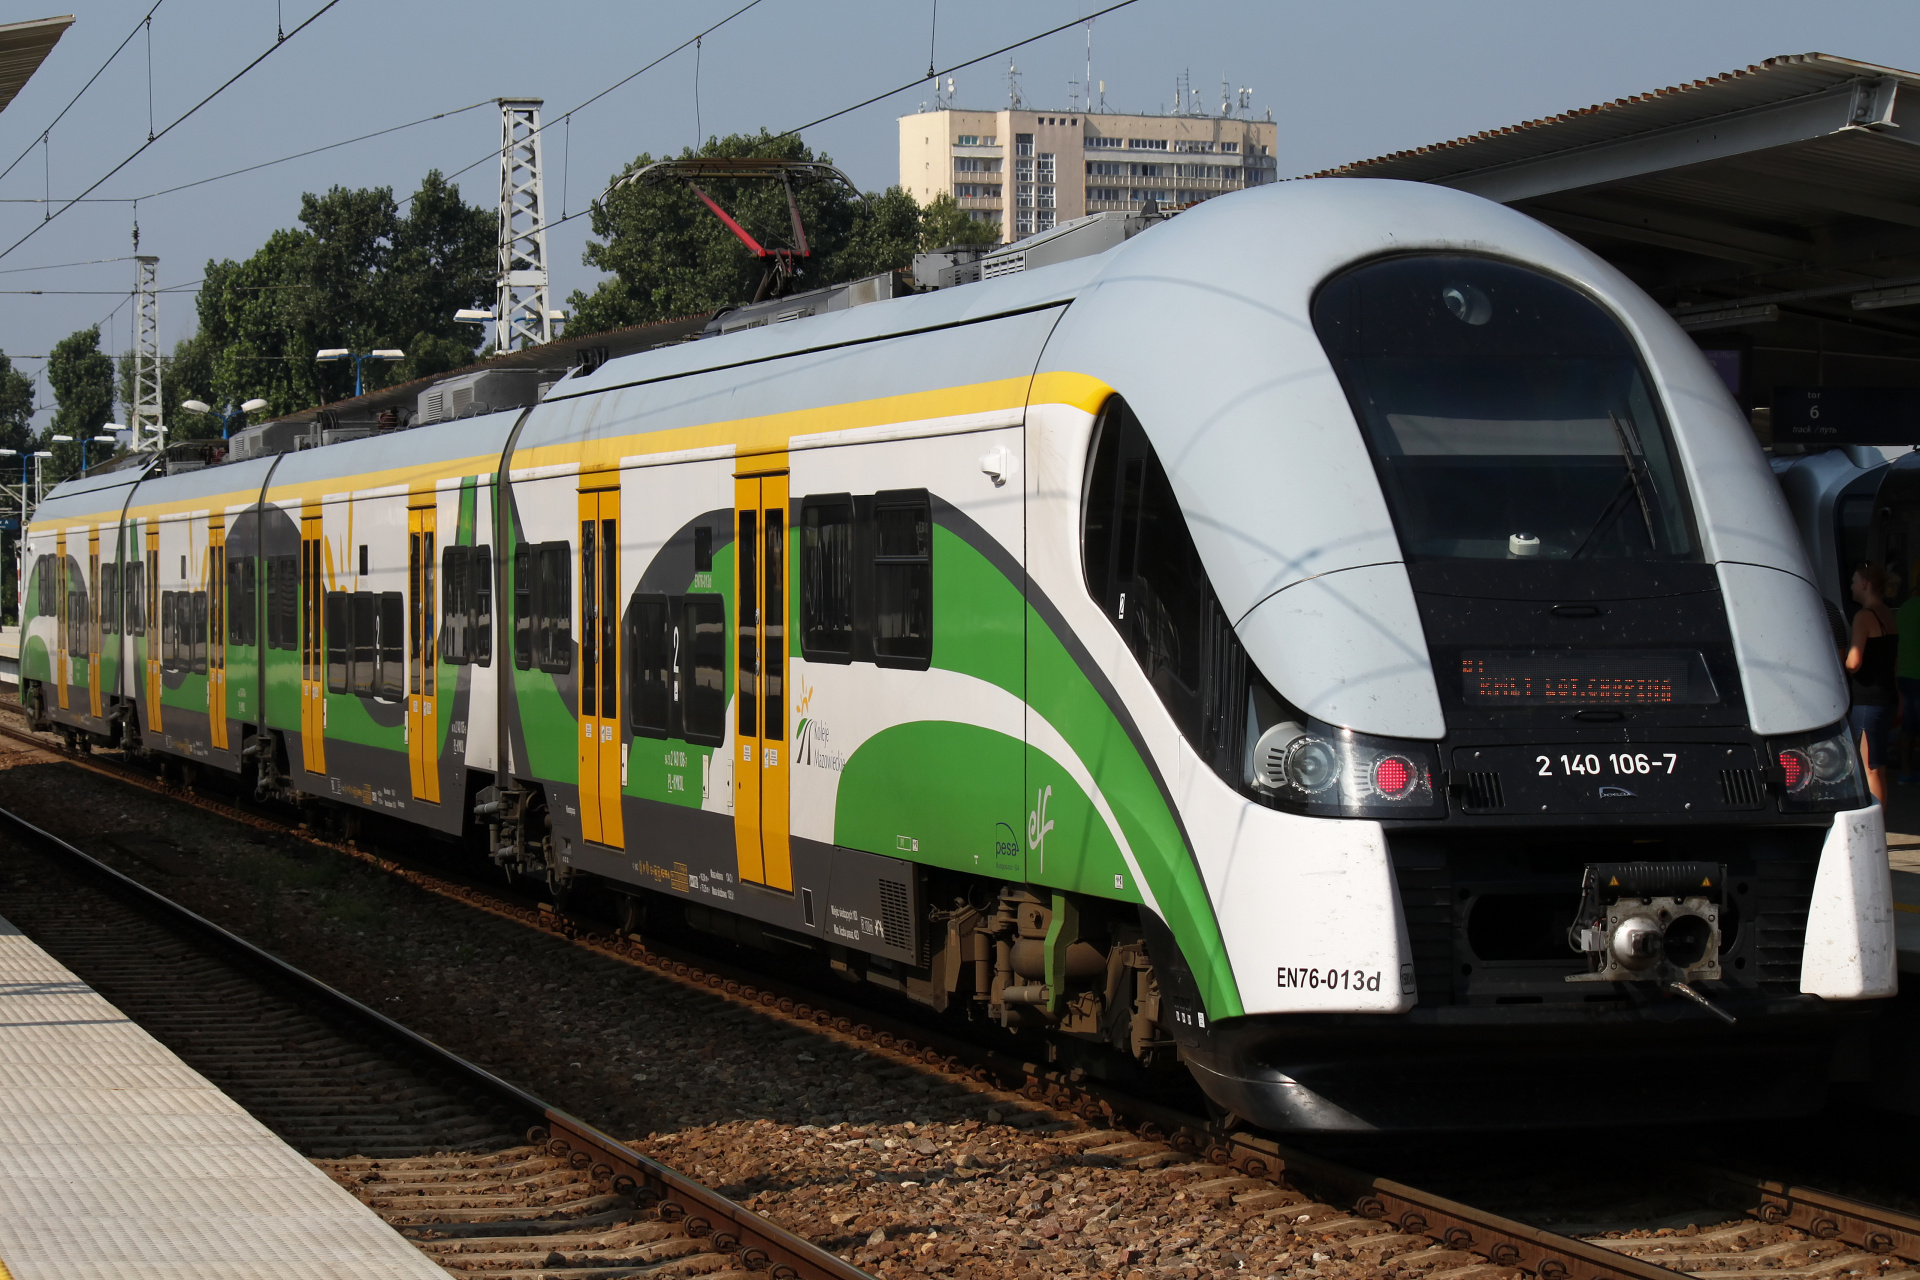 22WEe EN76-013 (Vehicles » Trains and Locomotives » Pesa ELF)